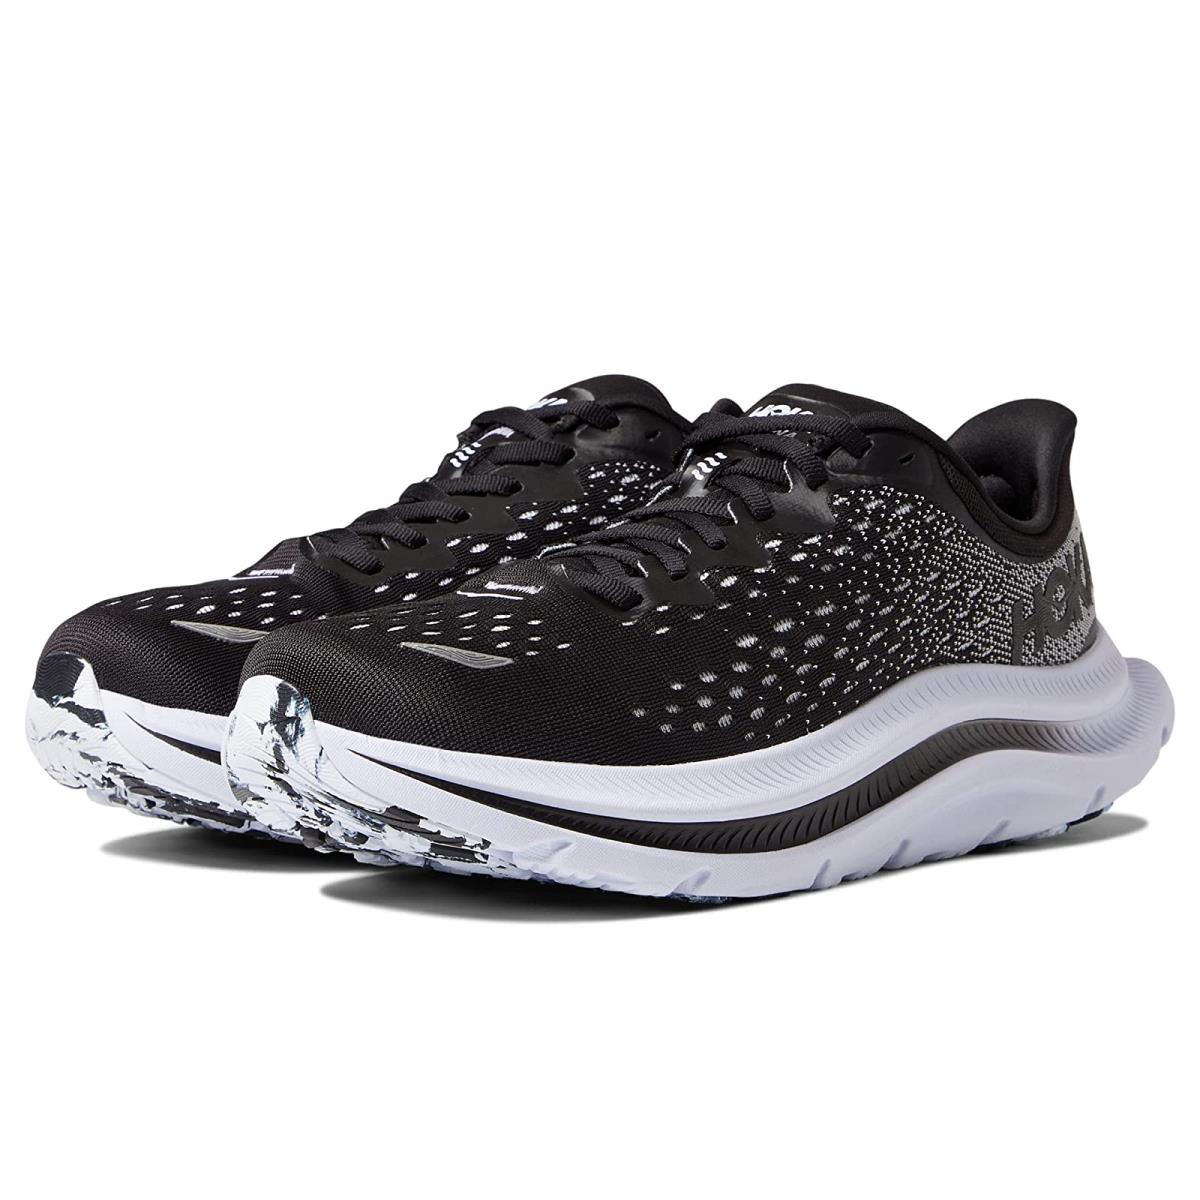 Hoka Kawana Men's Everyday Running Shoe - Black / White - Size 8.5